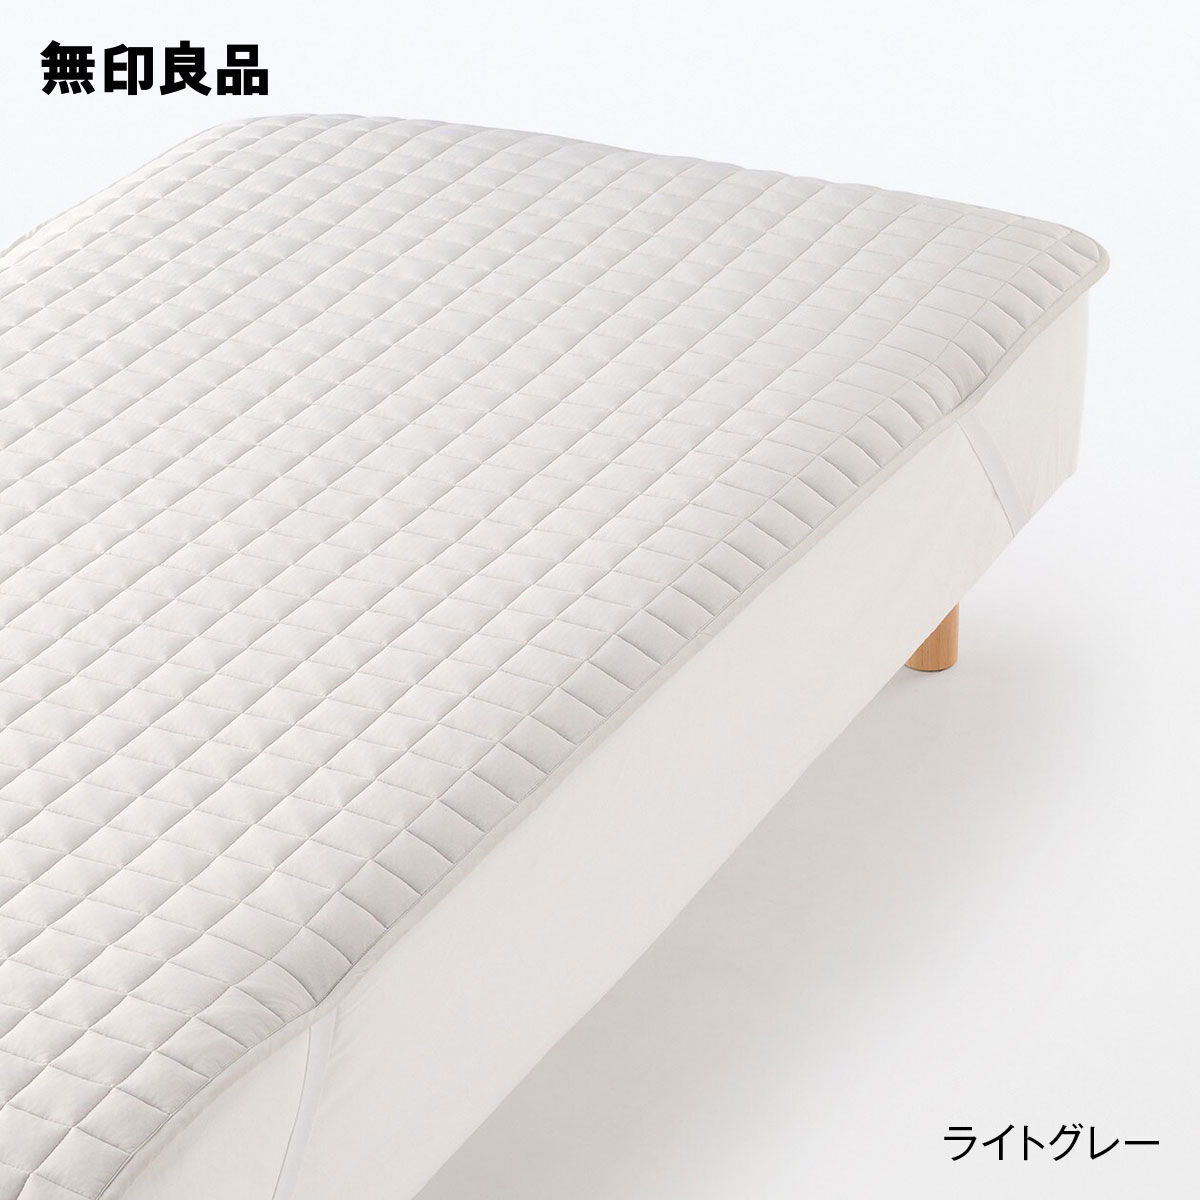 無印良品のひんやり 敷パッド・セミダブル 120×200cm(布団・寝具)